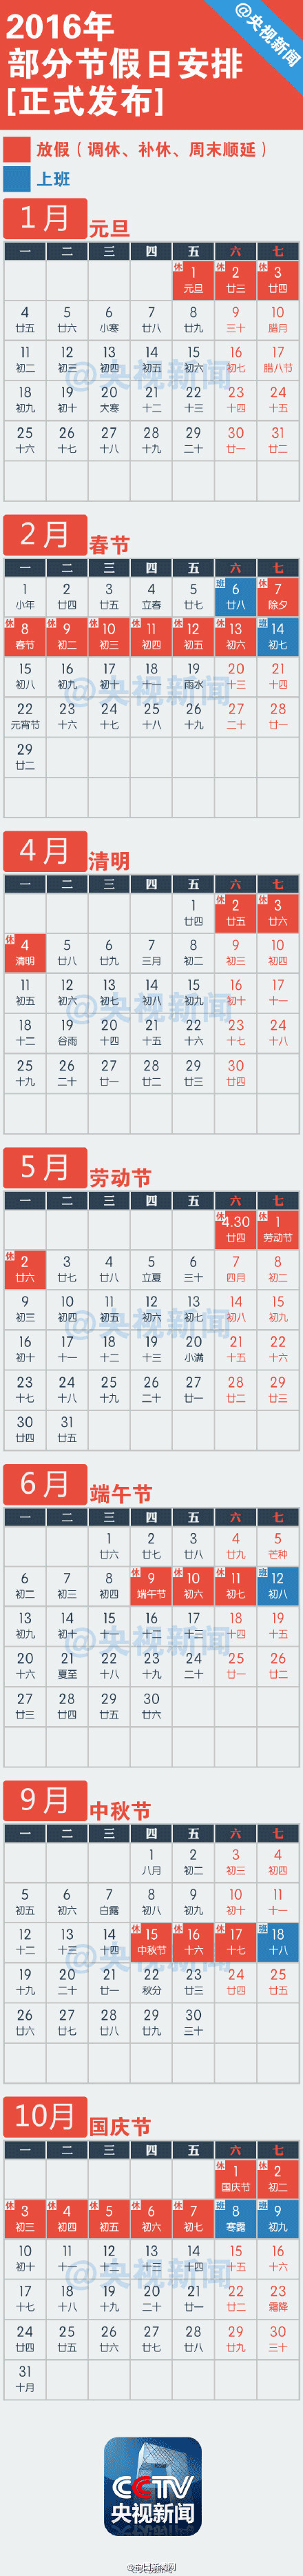 2016年放假安排时间表图